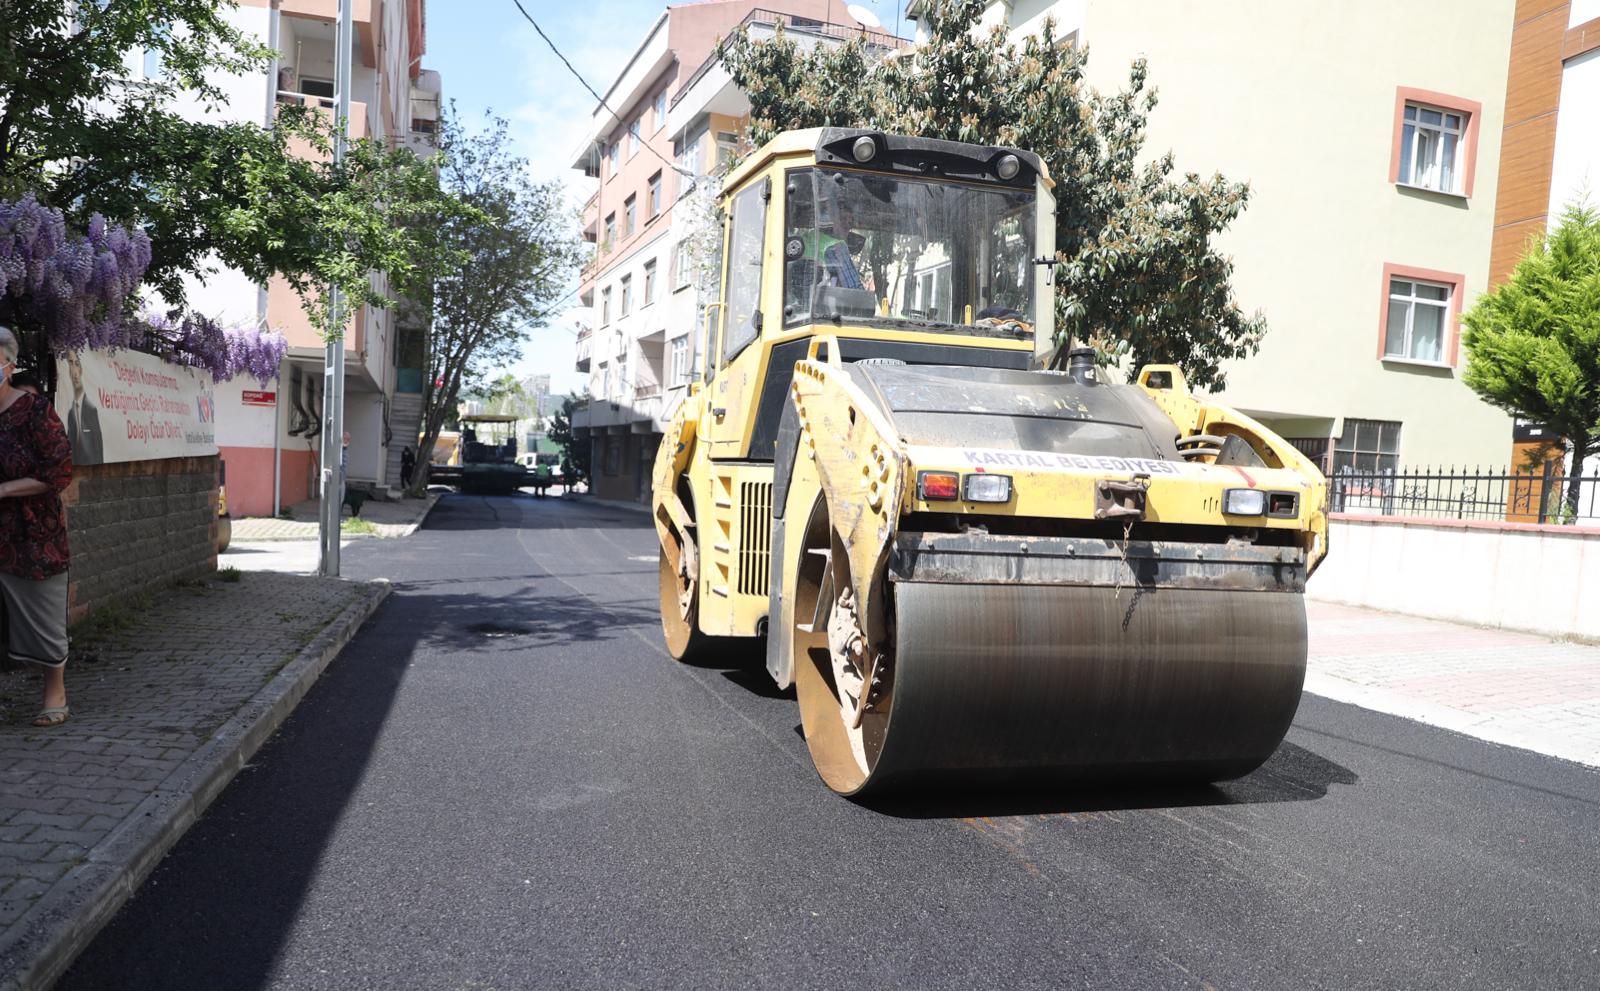 Kartal’da mahalle bazlı asfalt çalışmaları aralıksız devam ediyor